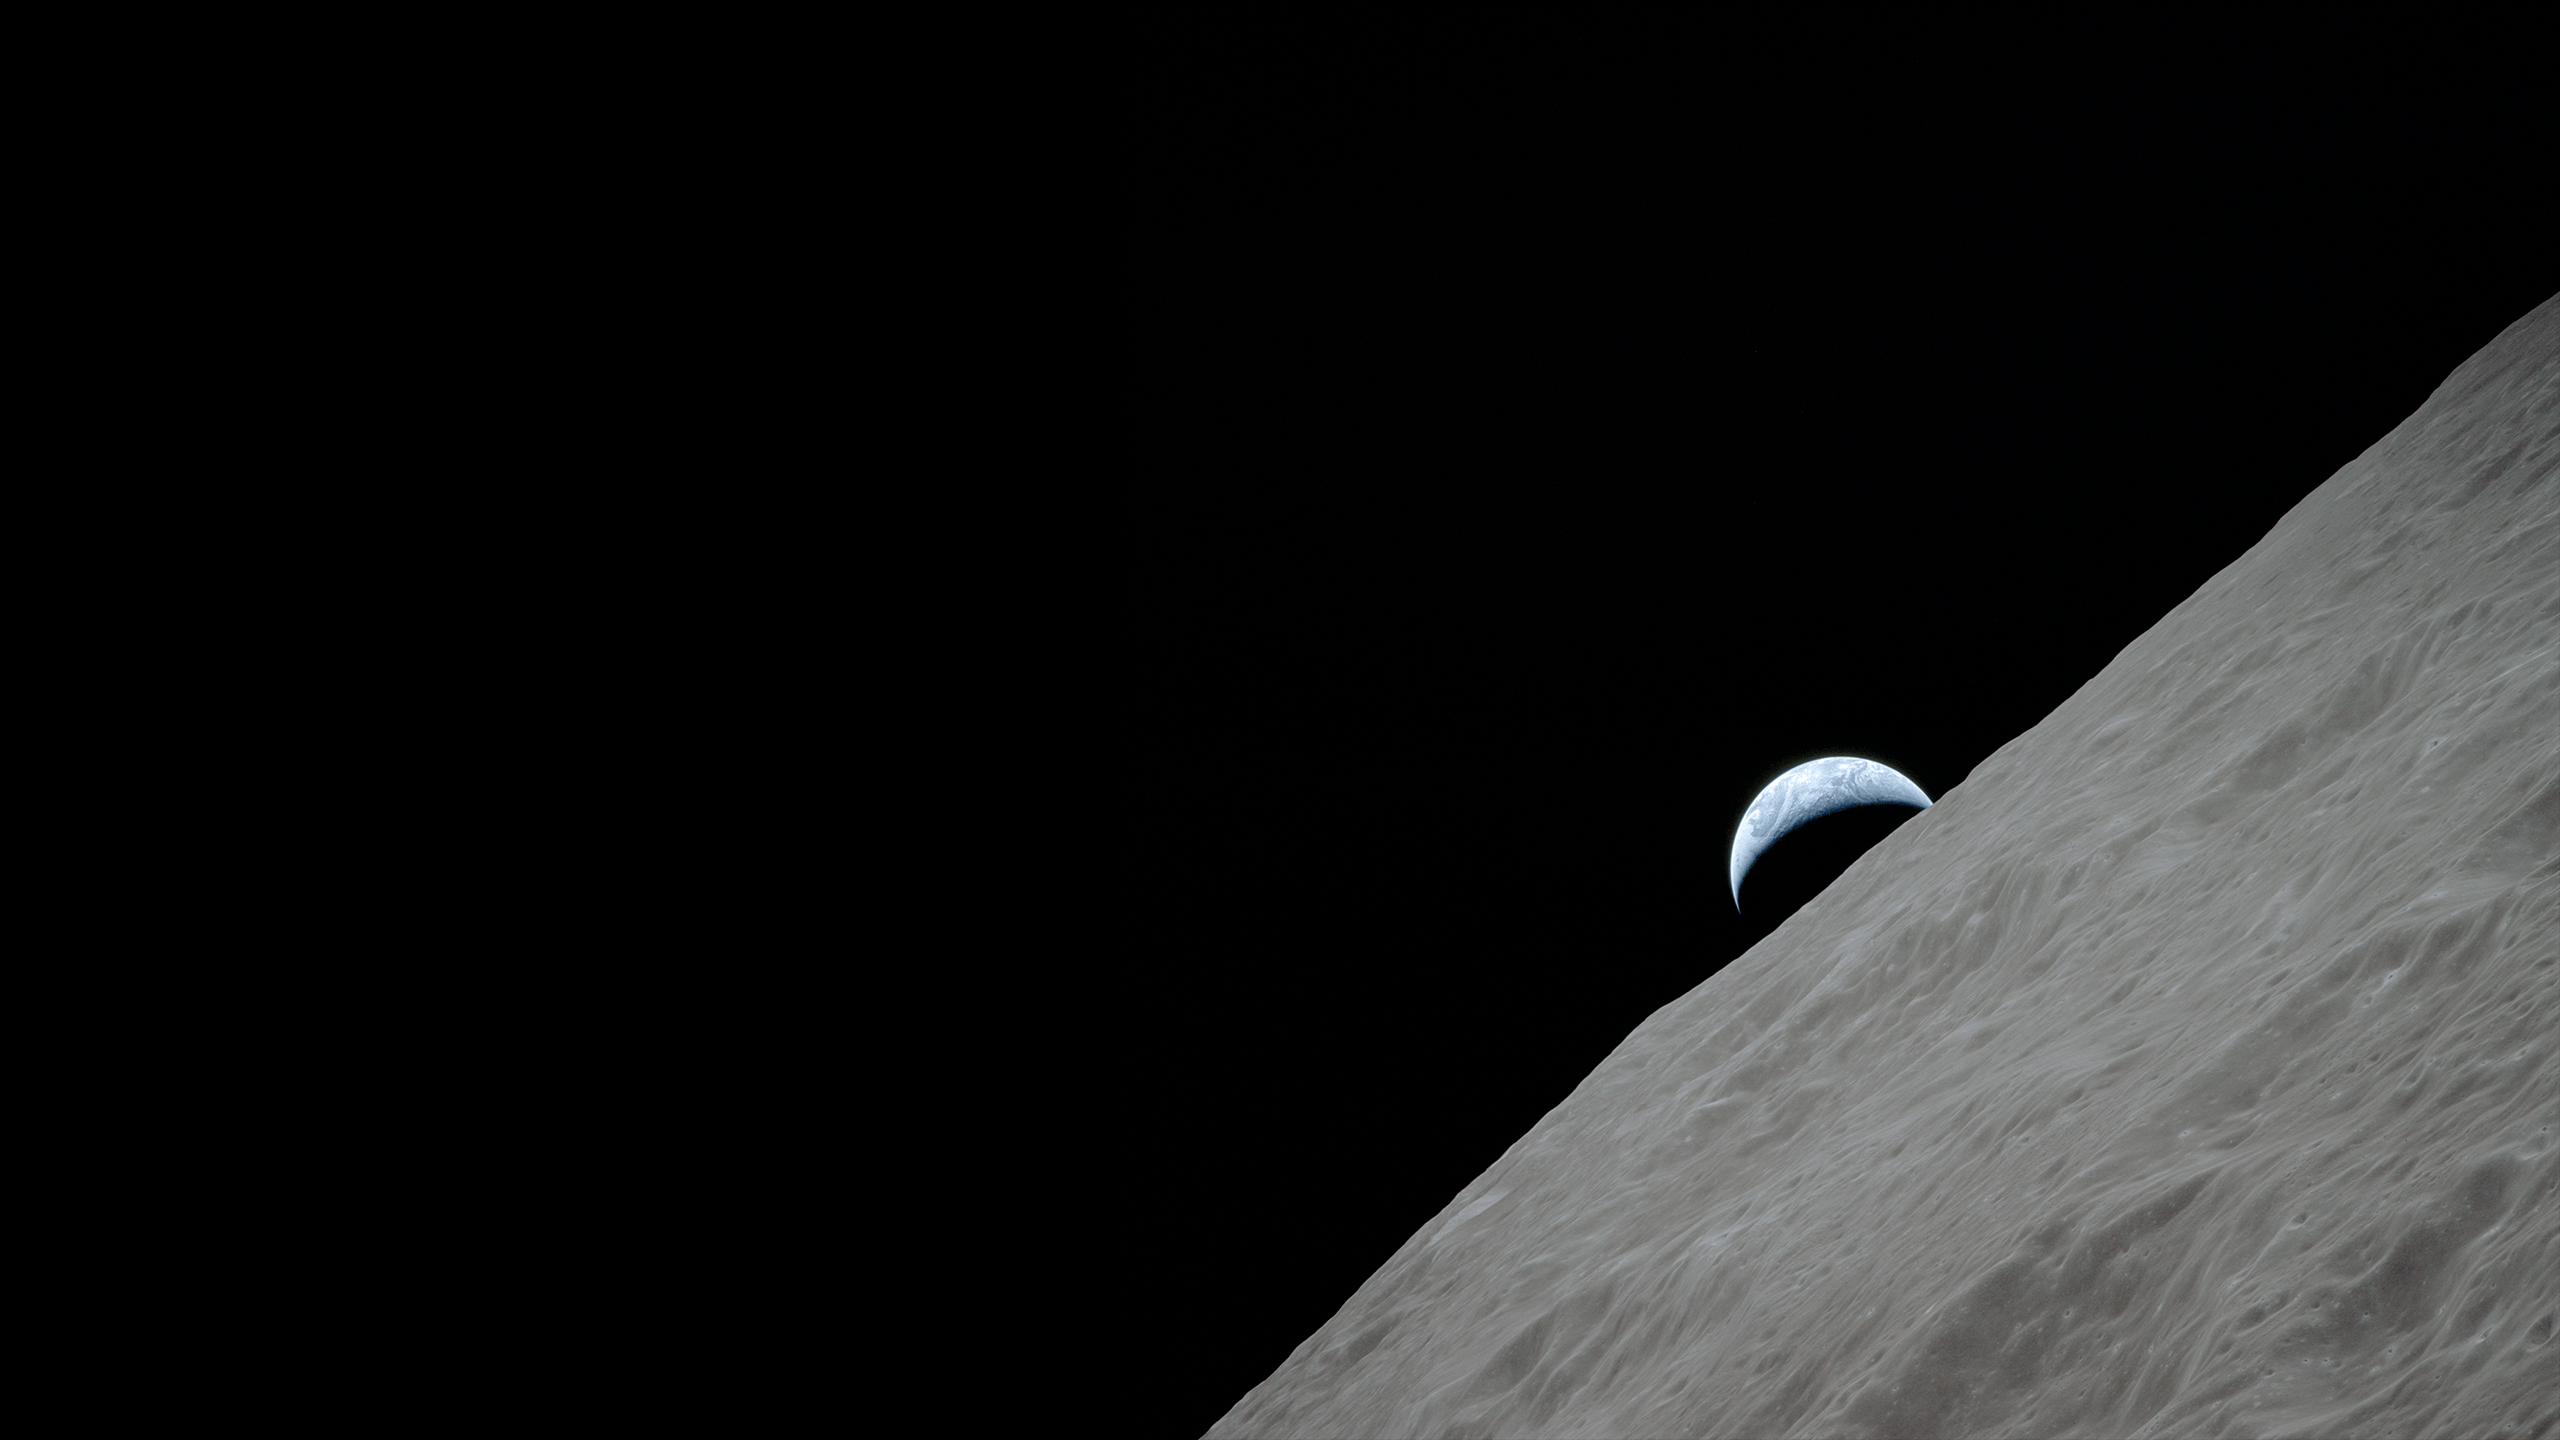 Apollo Earth's Moon [2560x1440]